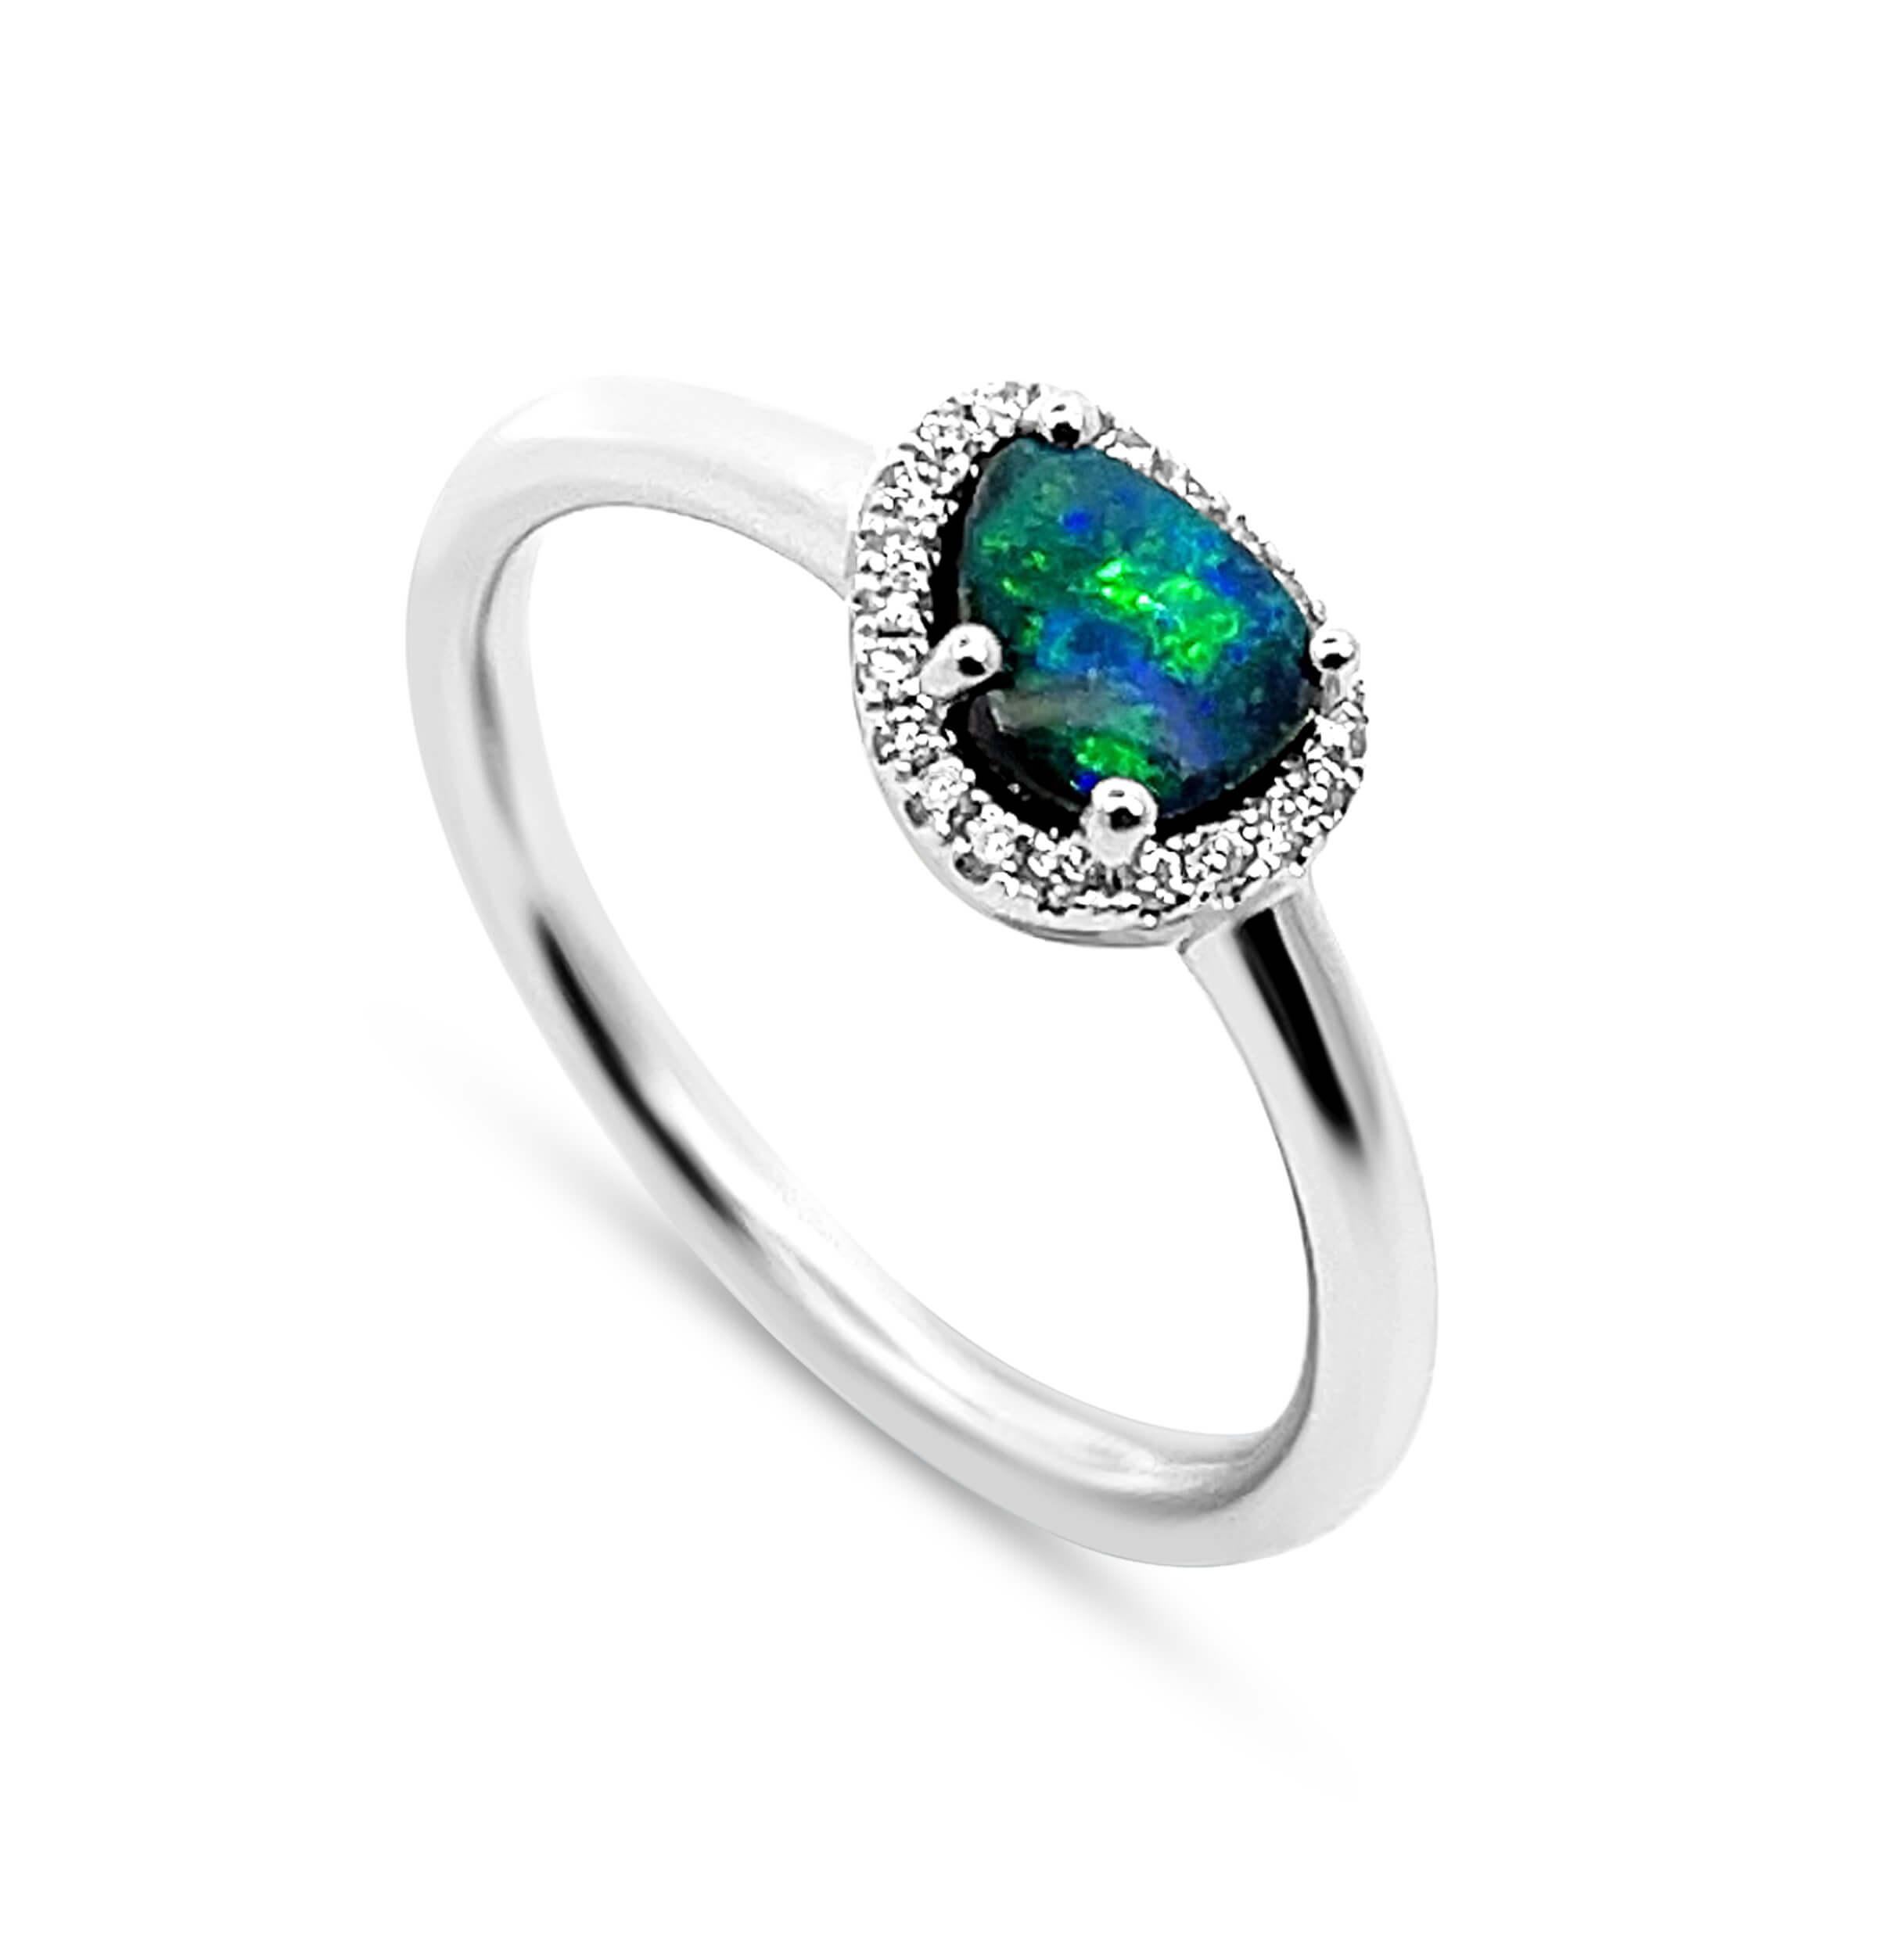 boulder opal engagement ring